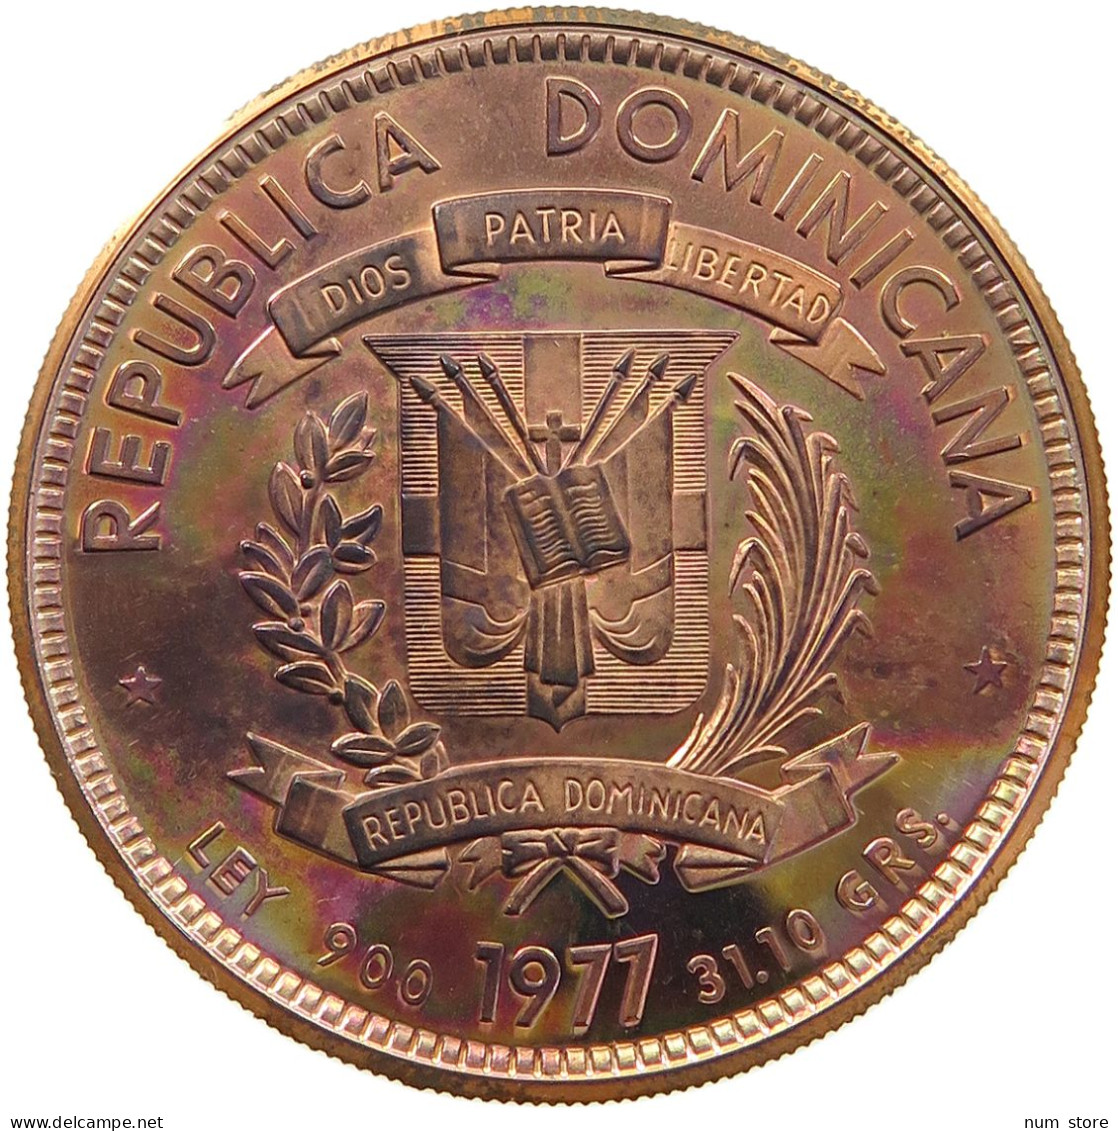 DOMINICAN REPUBLIC 200 PESOS 1977 DOMINICAN REPUBLIC 200 PESOS 1977 COPPER PROOF PATTERN #t084 0125 - Dominicaanse Republiek